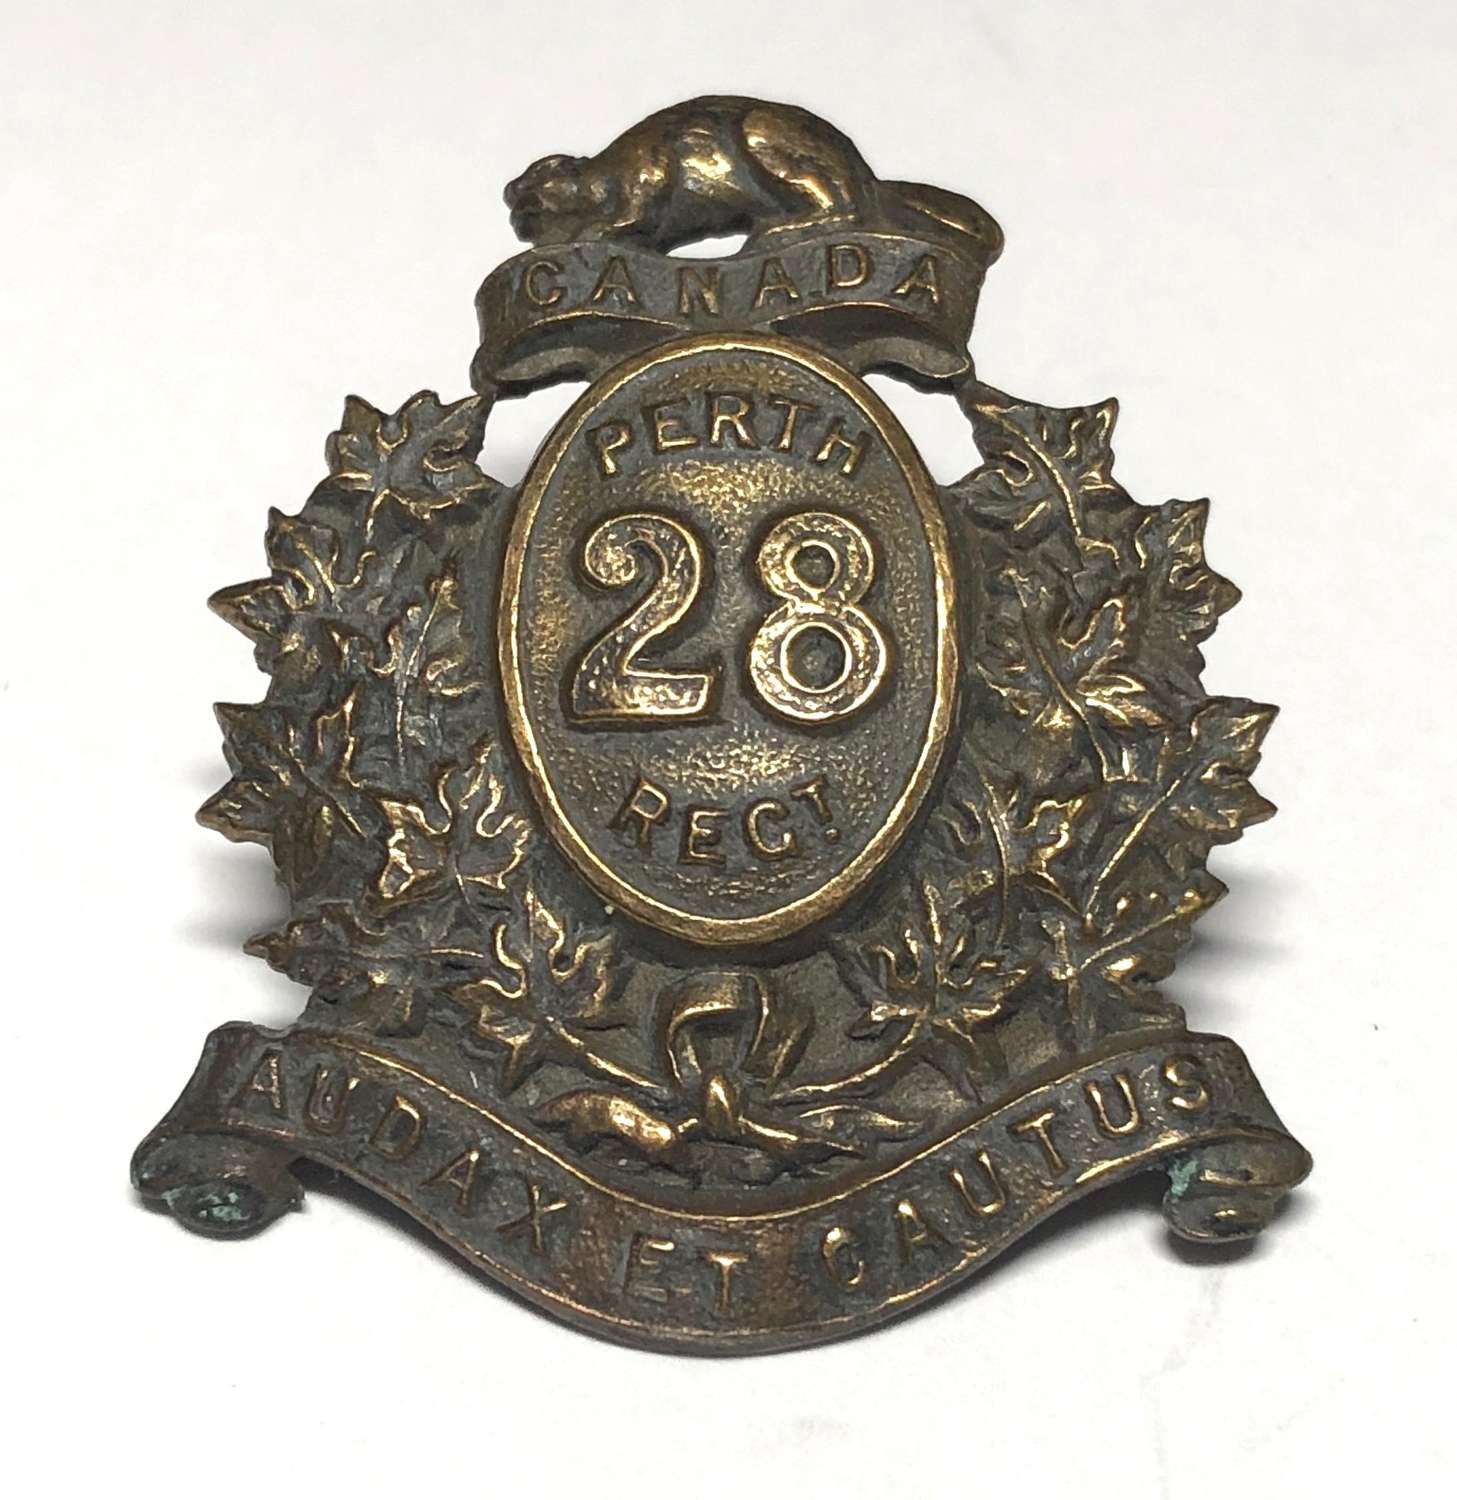 28th Perth Regiment of Canada cap badge c1900-14